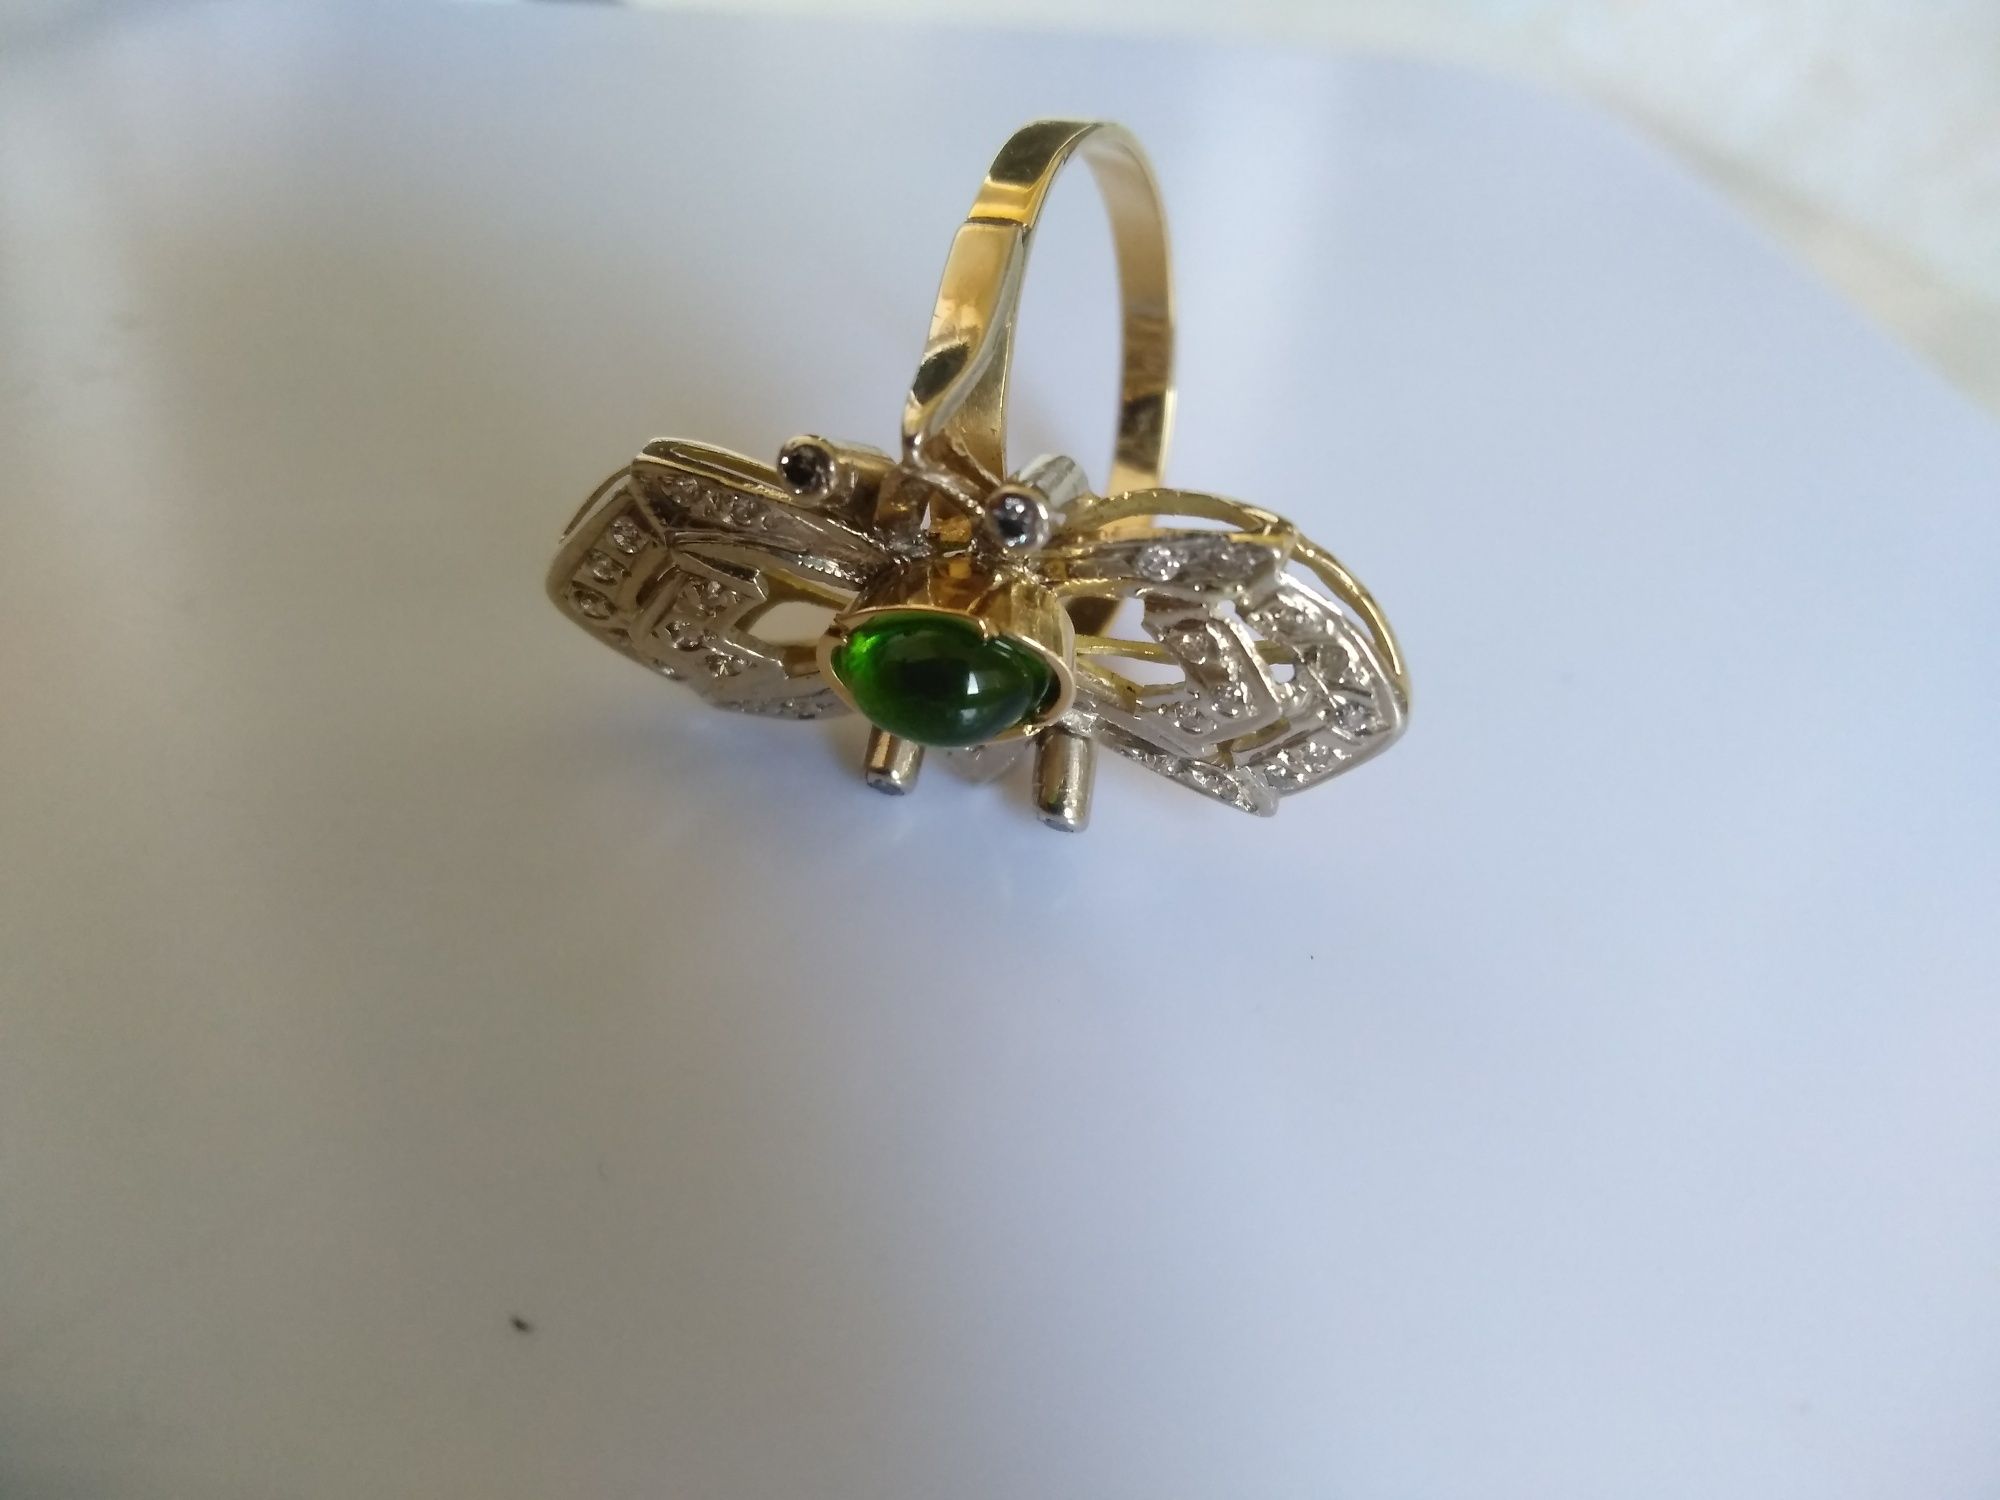 Продам золотое кольцо с чистейшими якутскими бриллиантами 6 гр 750 пр